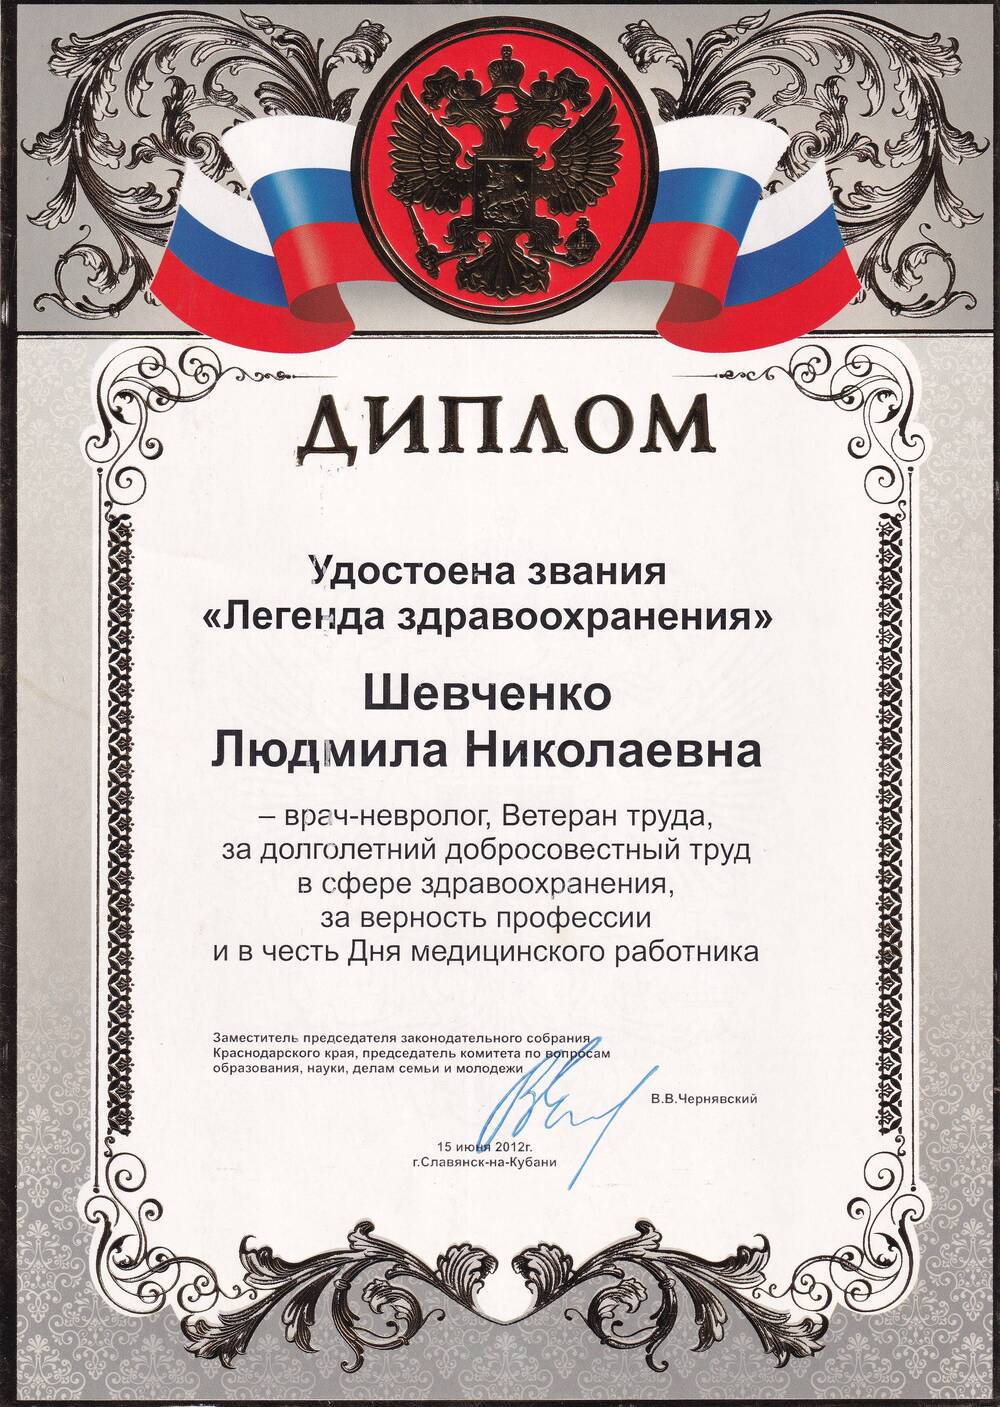 Диплом на имя Шевченко Людмилы Николаевны, врача-невролога, удостоенной звания Легенда здравоохранения. 15 июня 2012 года.